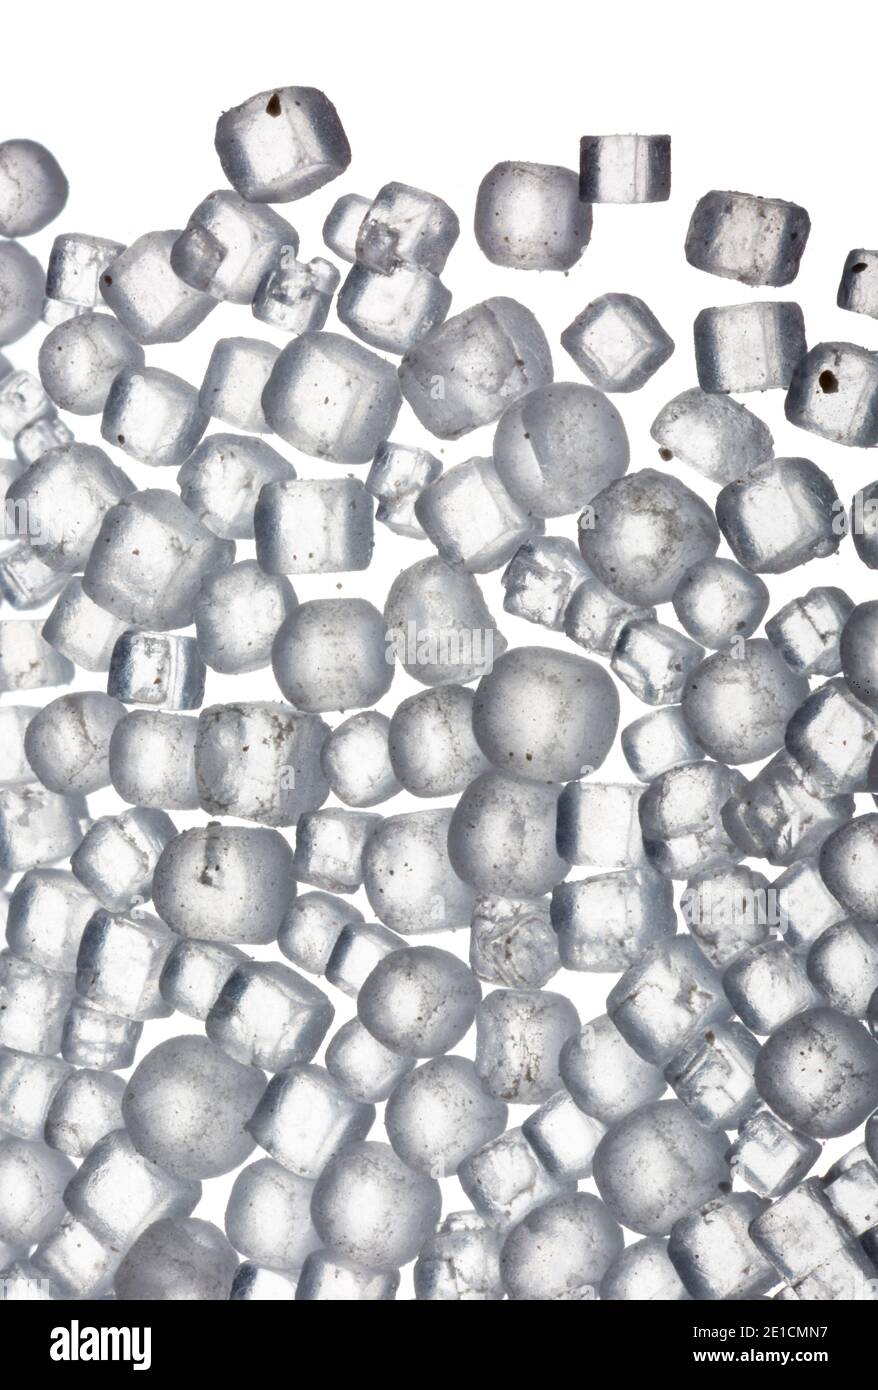 Makrobild von jodiertem Salz mit 5-facher Vergrößerung, aufgenommen auf Ein weißer Hintergrund Stockfoto